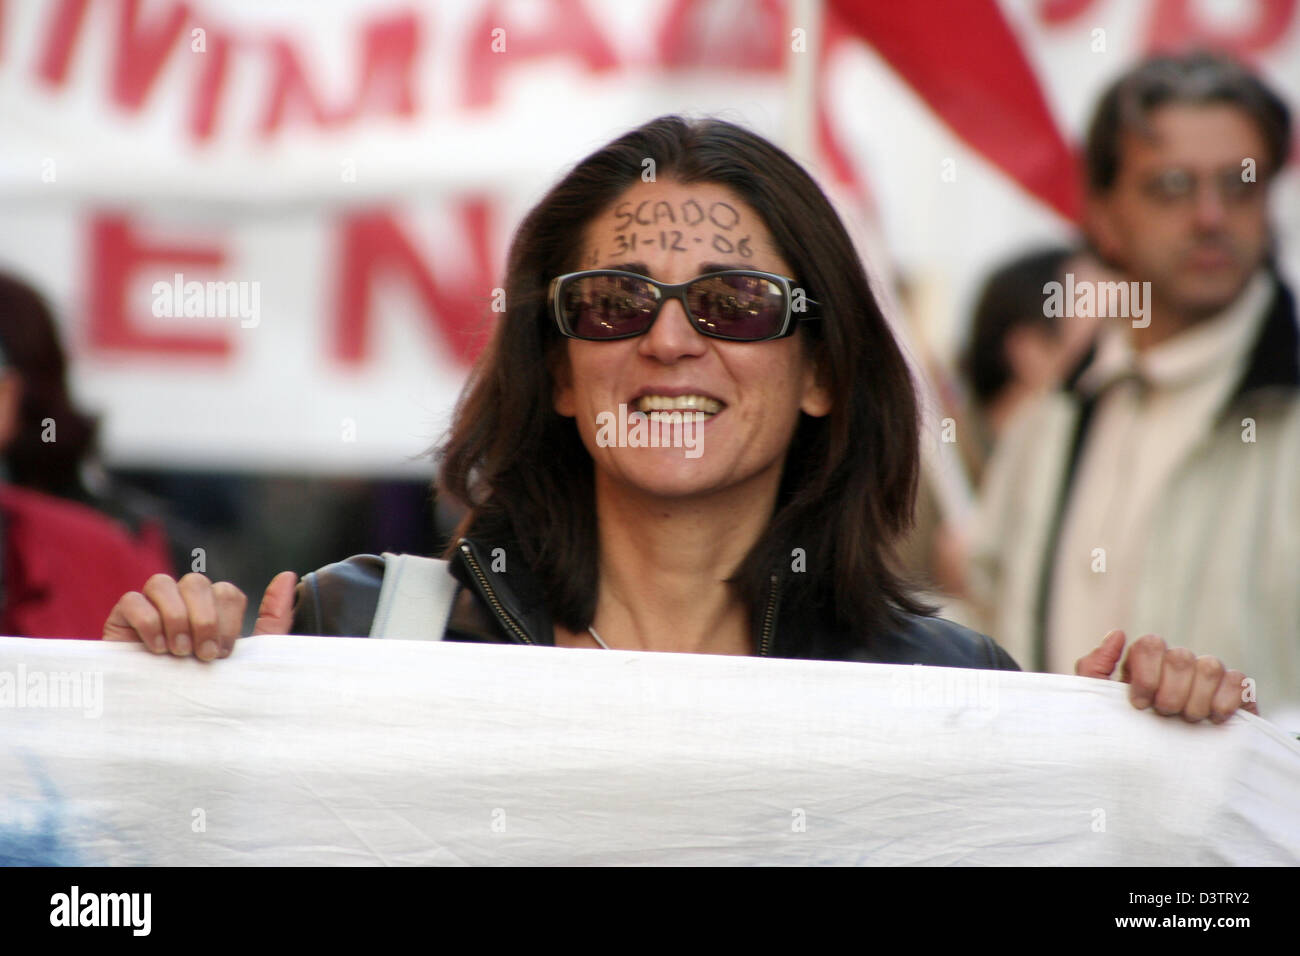 Eine Frau hat "Scado 31.12.06" (Ich betreibe auf 31.12.06)written auf ihrer Stirn bei einer Demonstration gegen die zunehmende Umwandlung der unbefristete Verträge für begrenzte Verträge in Rom, Samstag, 4. November 2006. Foto: Lars Halbauer Stockfoto